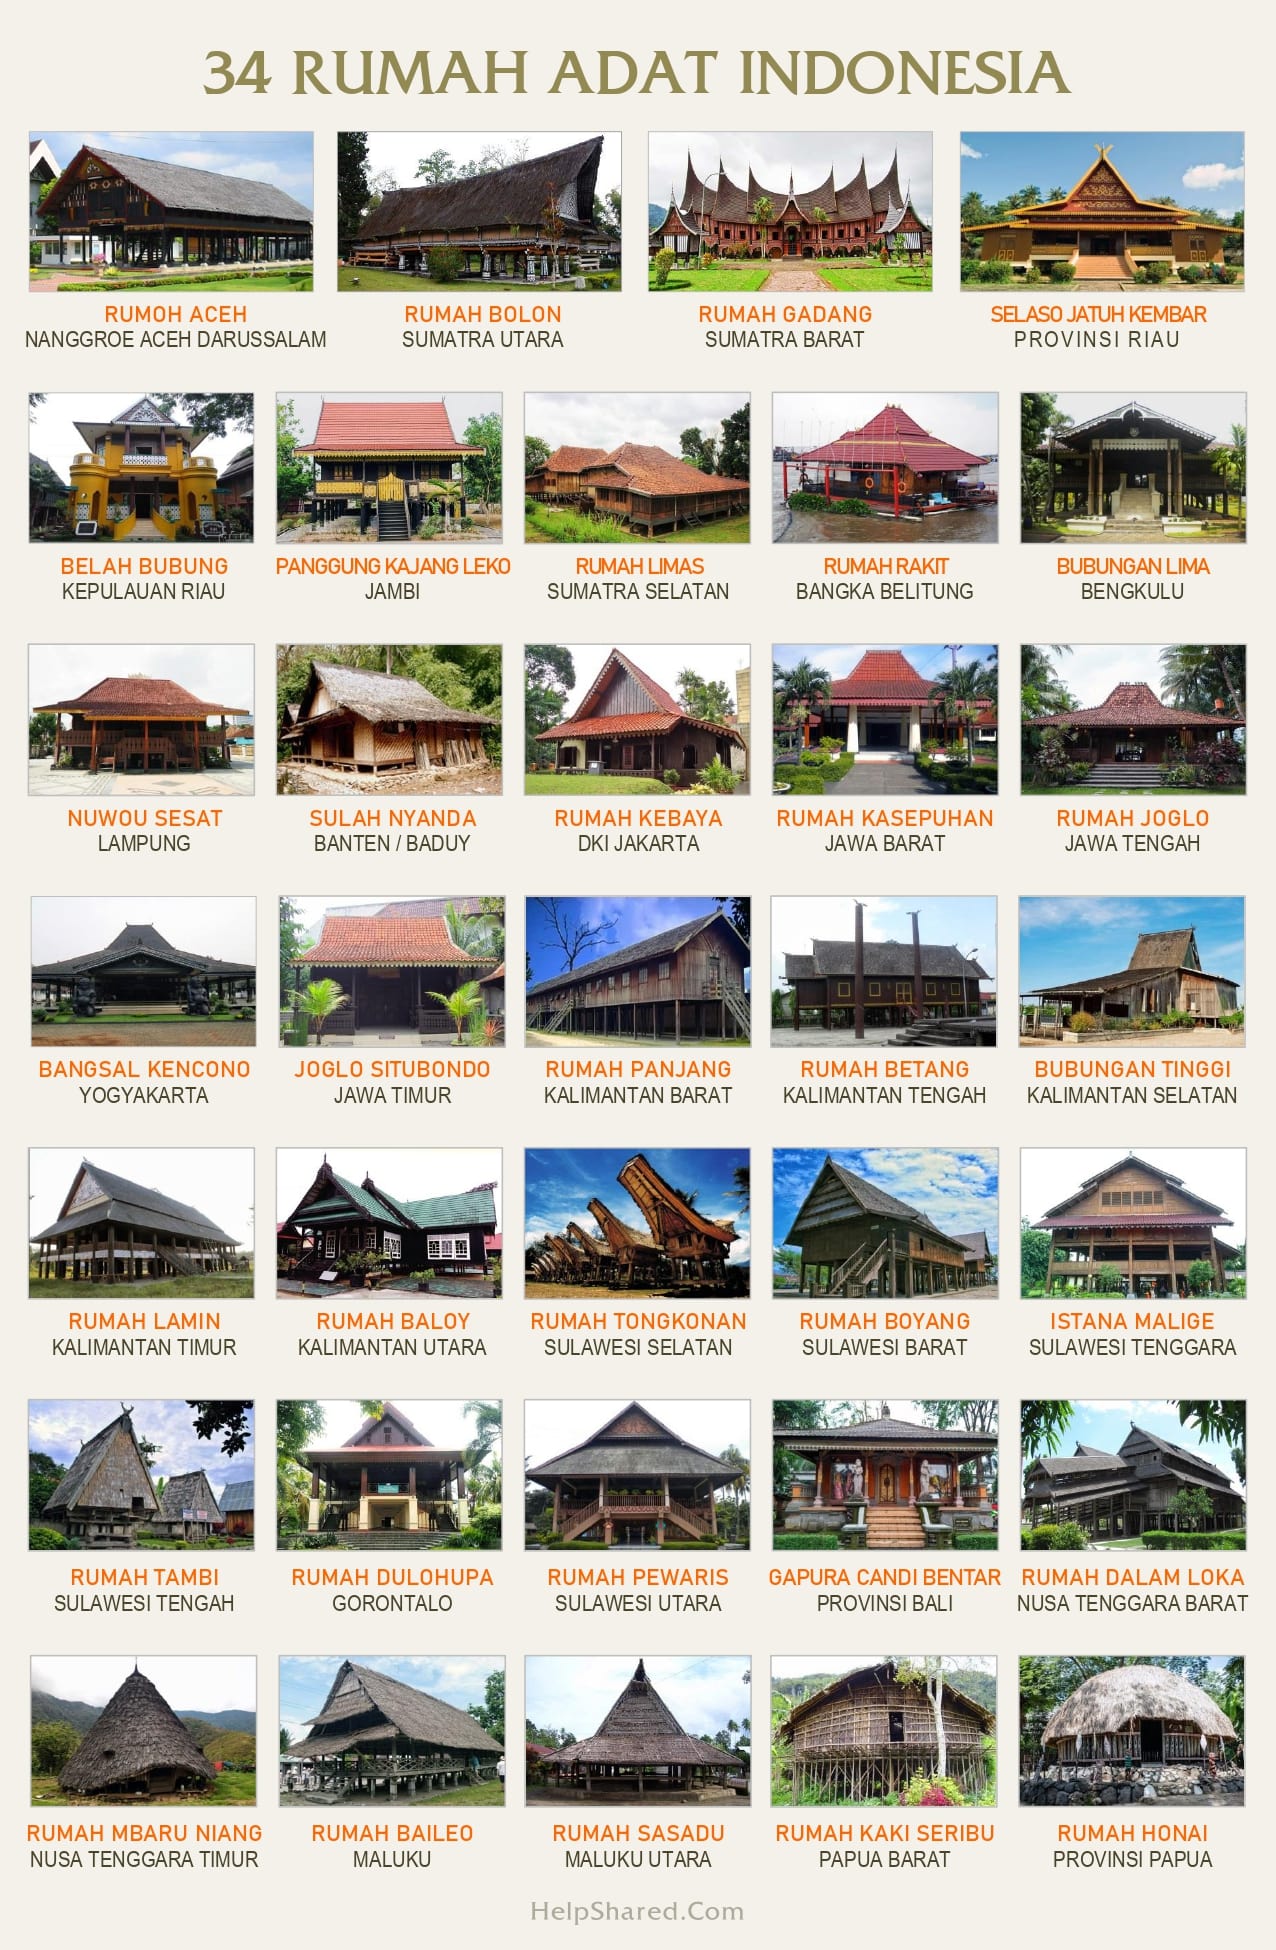 100 Gambar Rumah Adat Dari 34 Provinsi Di Indonesia